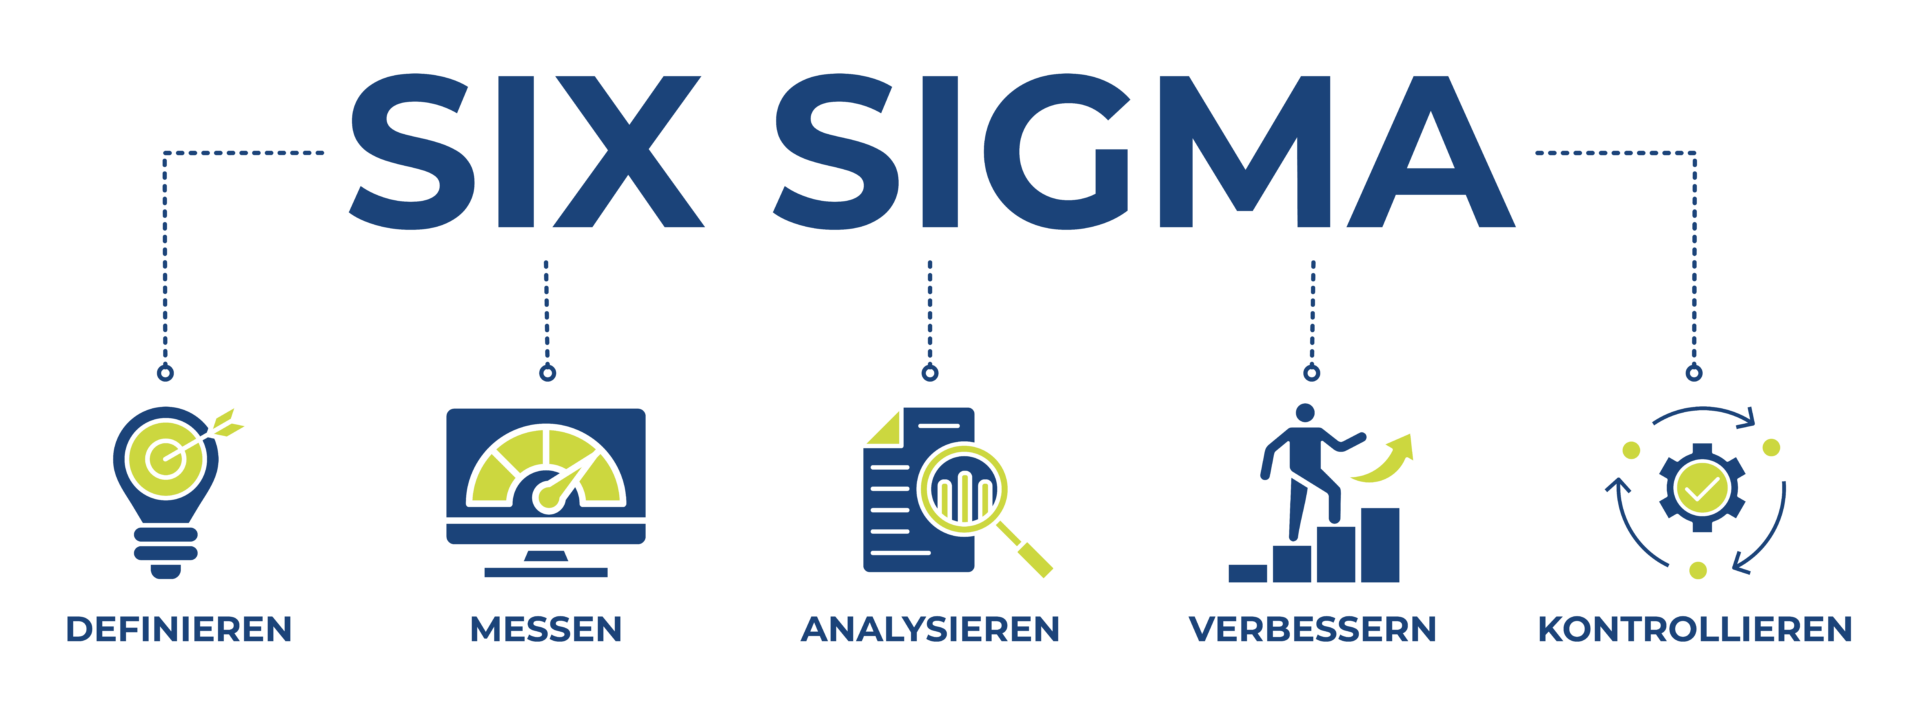 Six Sigma - Die 5 Phasen des DMAIC Zyklus